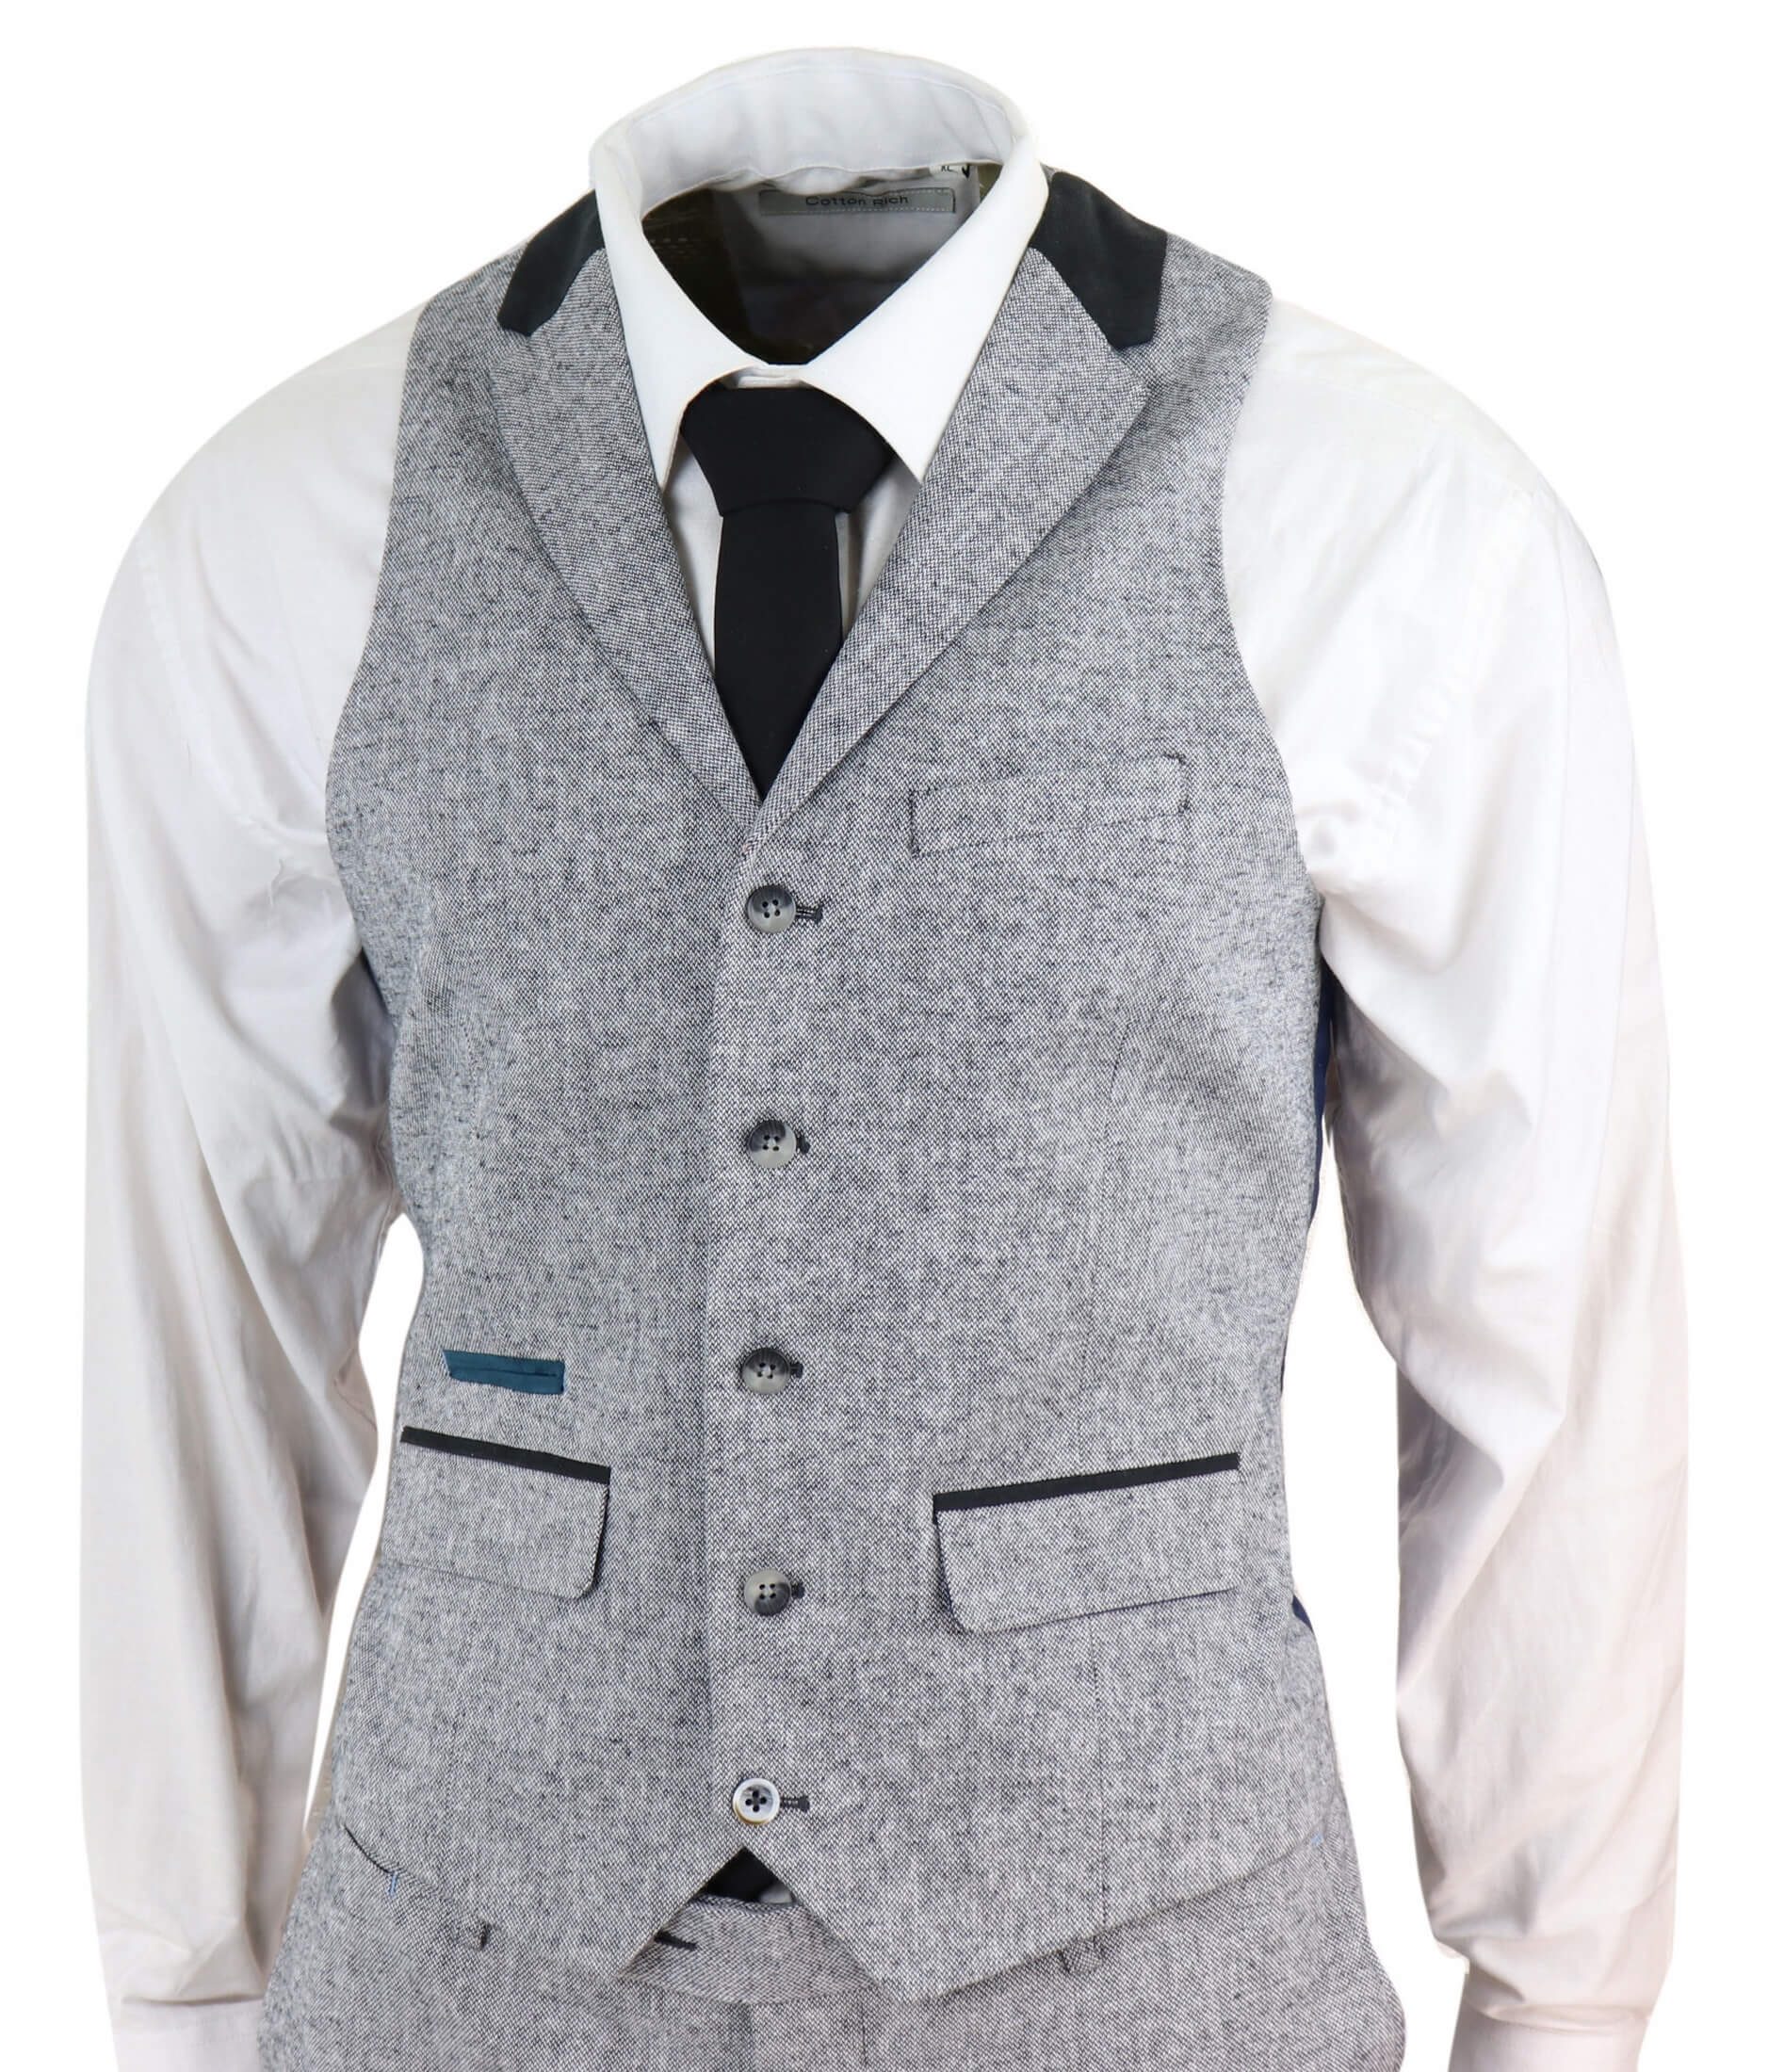 Men's 3 Piece Suit - Grey with Black Detailing: Buy Online - Happy ...